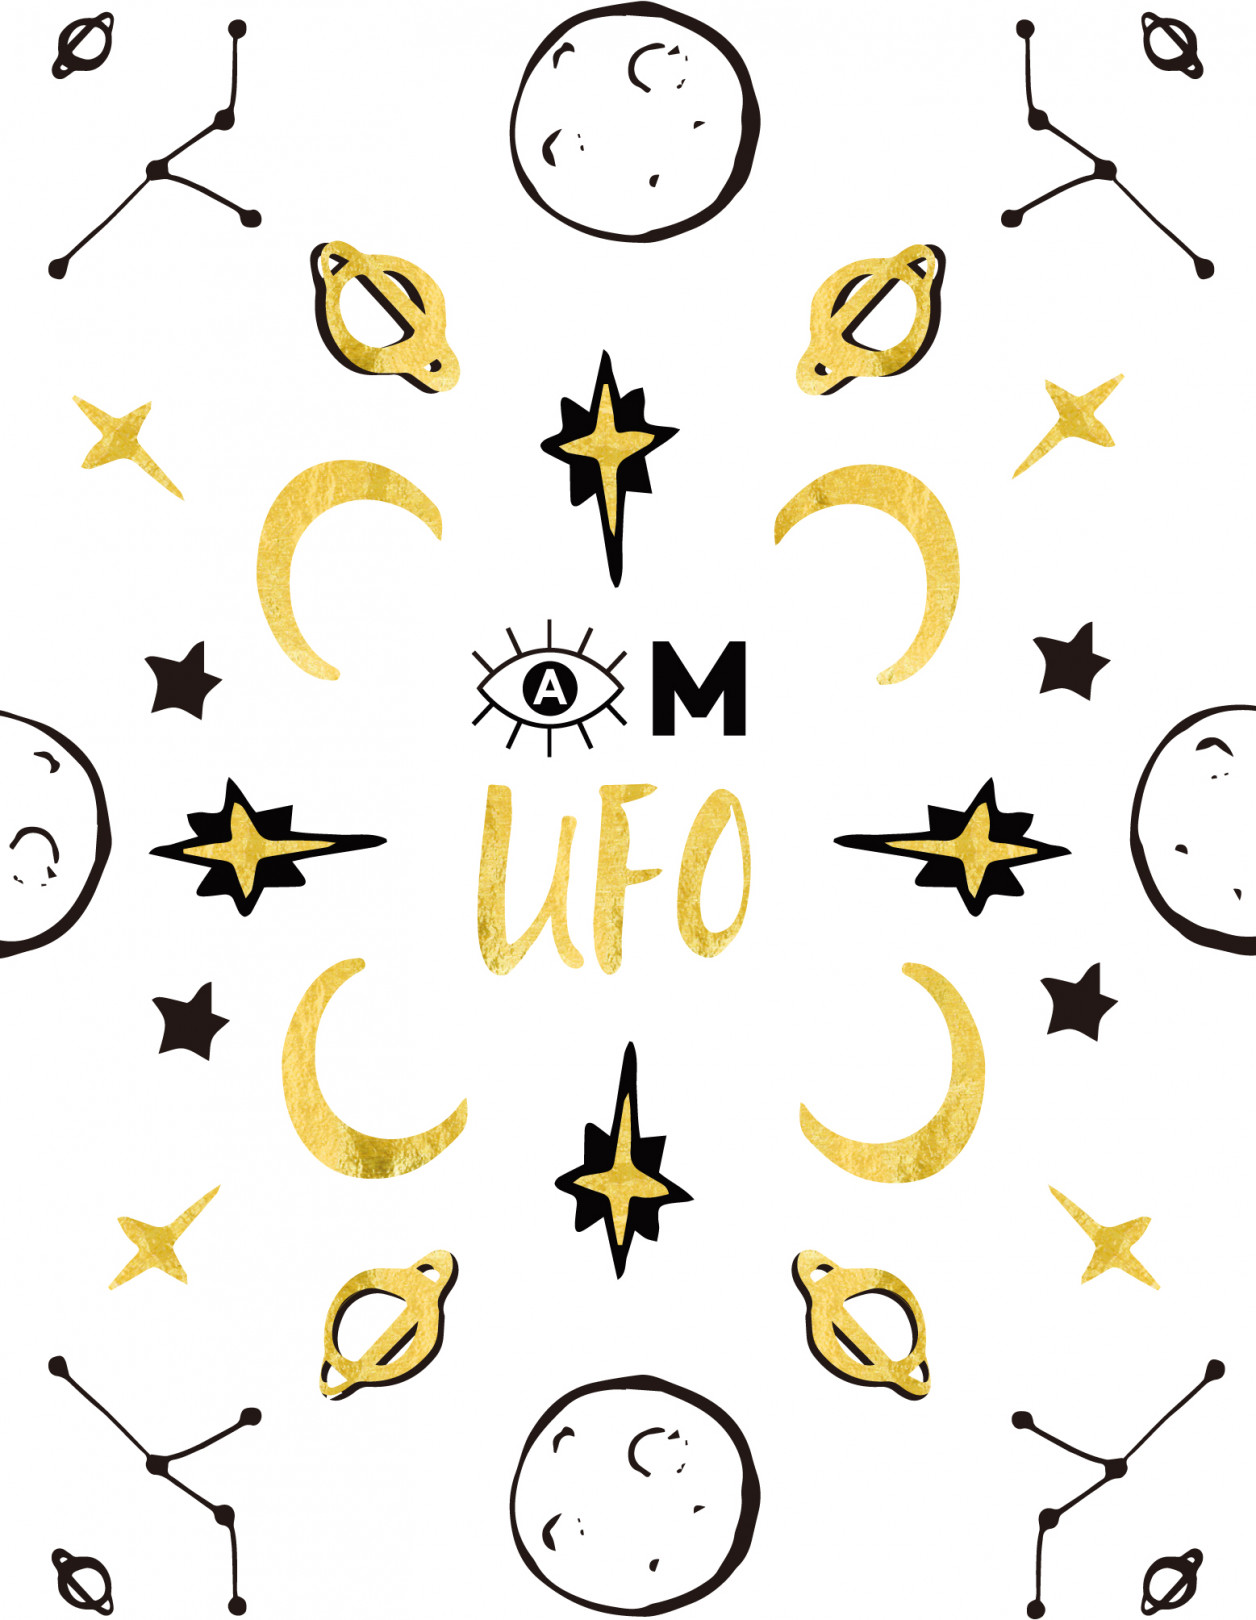 宇宙をイメージした幻想的かつ個性的なデザインの「UFOコレクション」